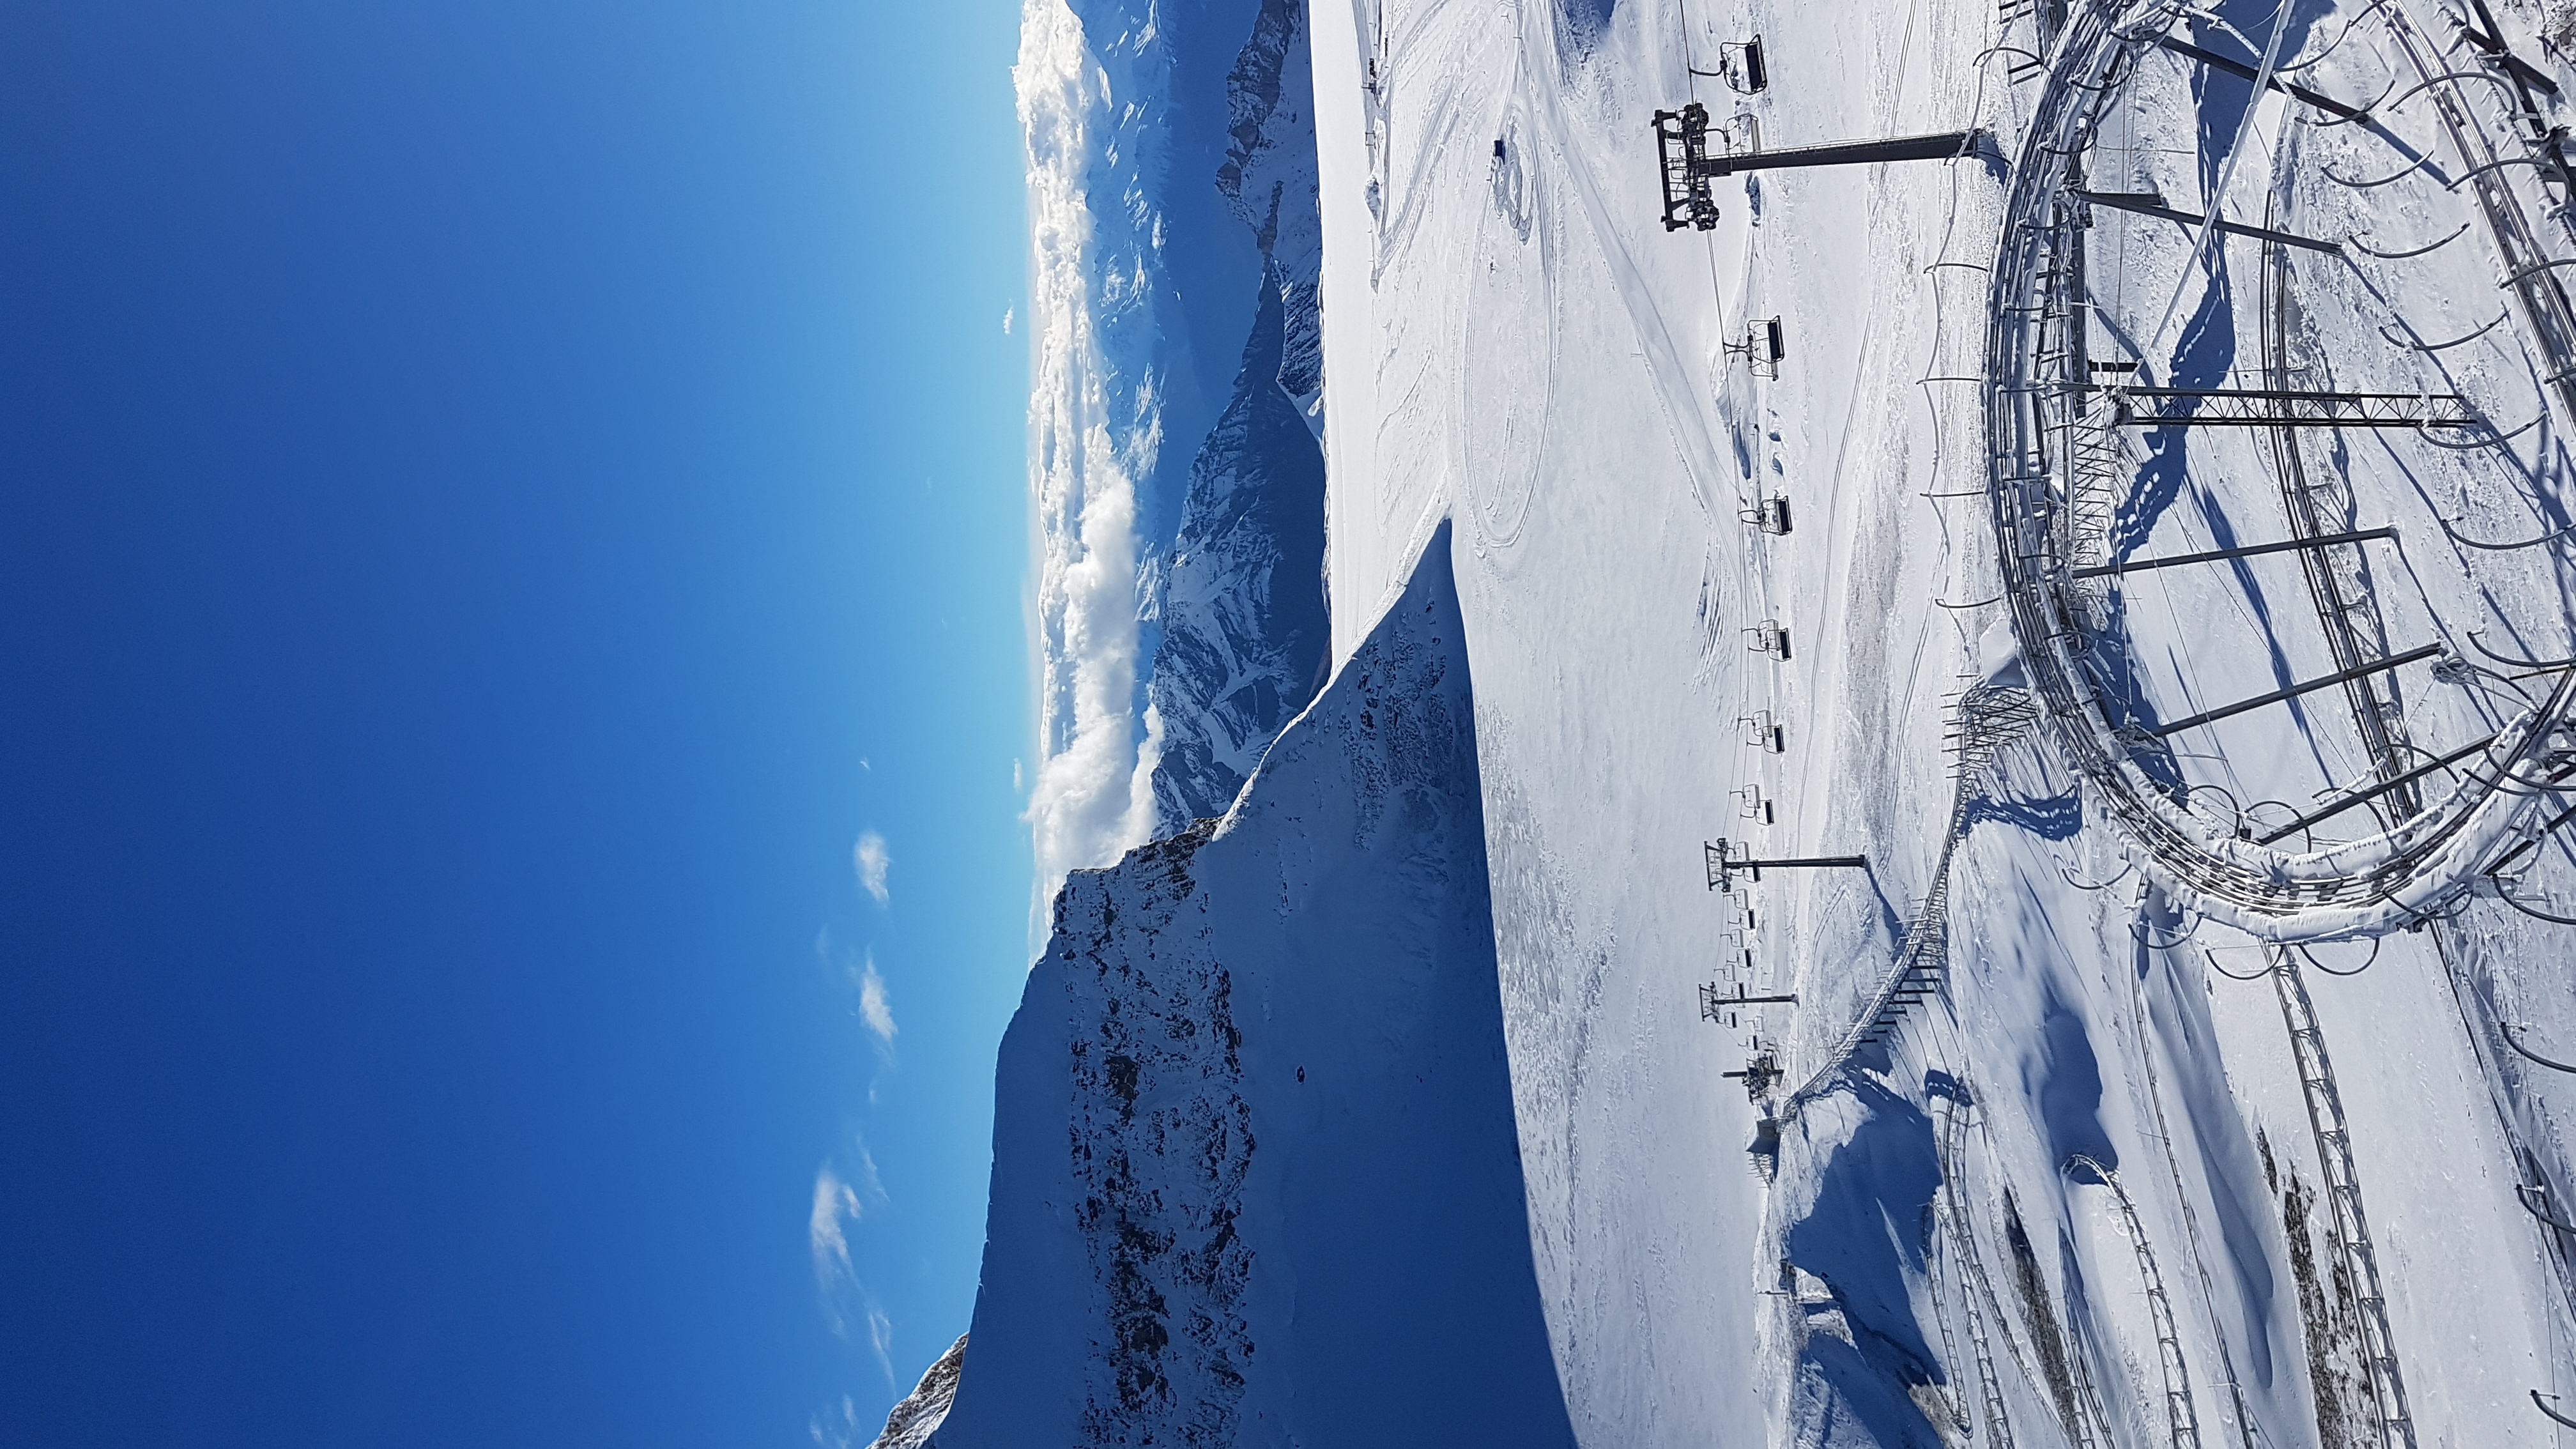 Opening day @ Glacier 3000, Gstaad Glacier 3000